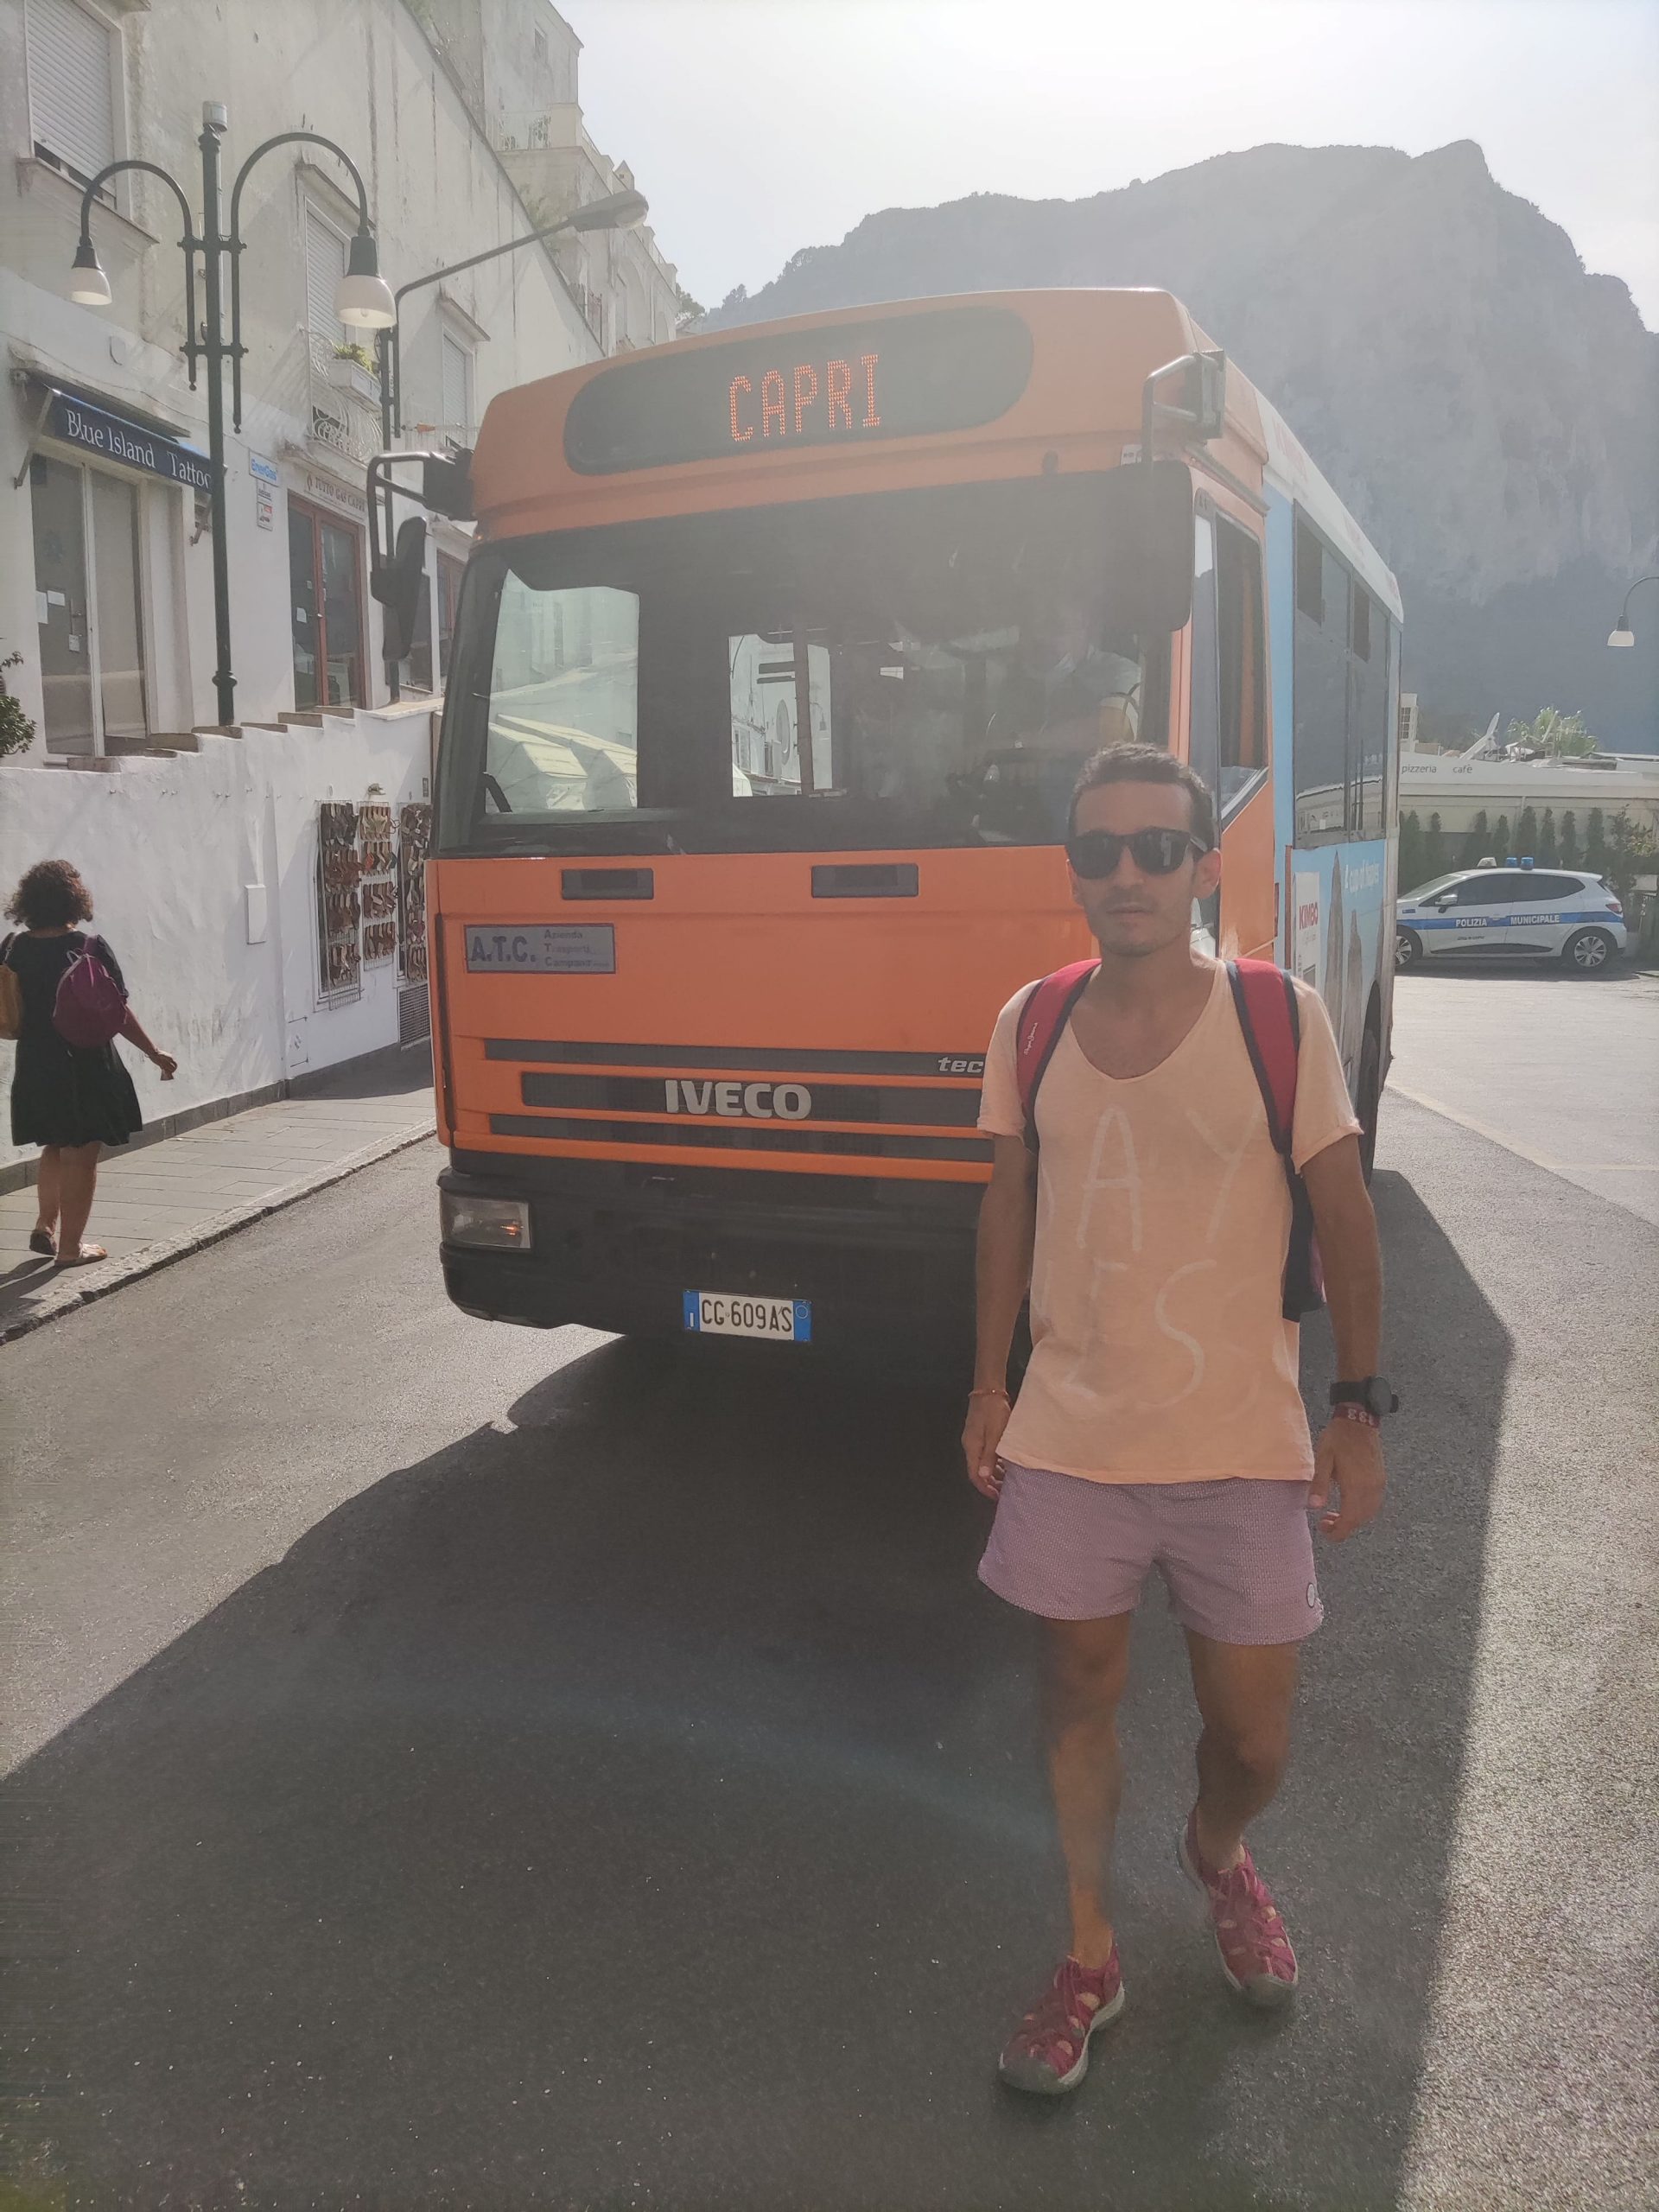 Capri - El maestro viajero